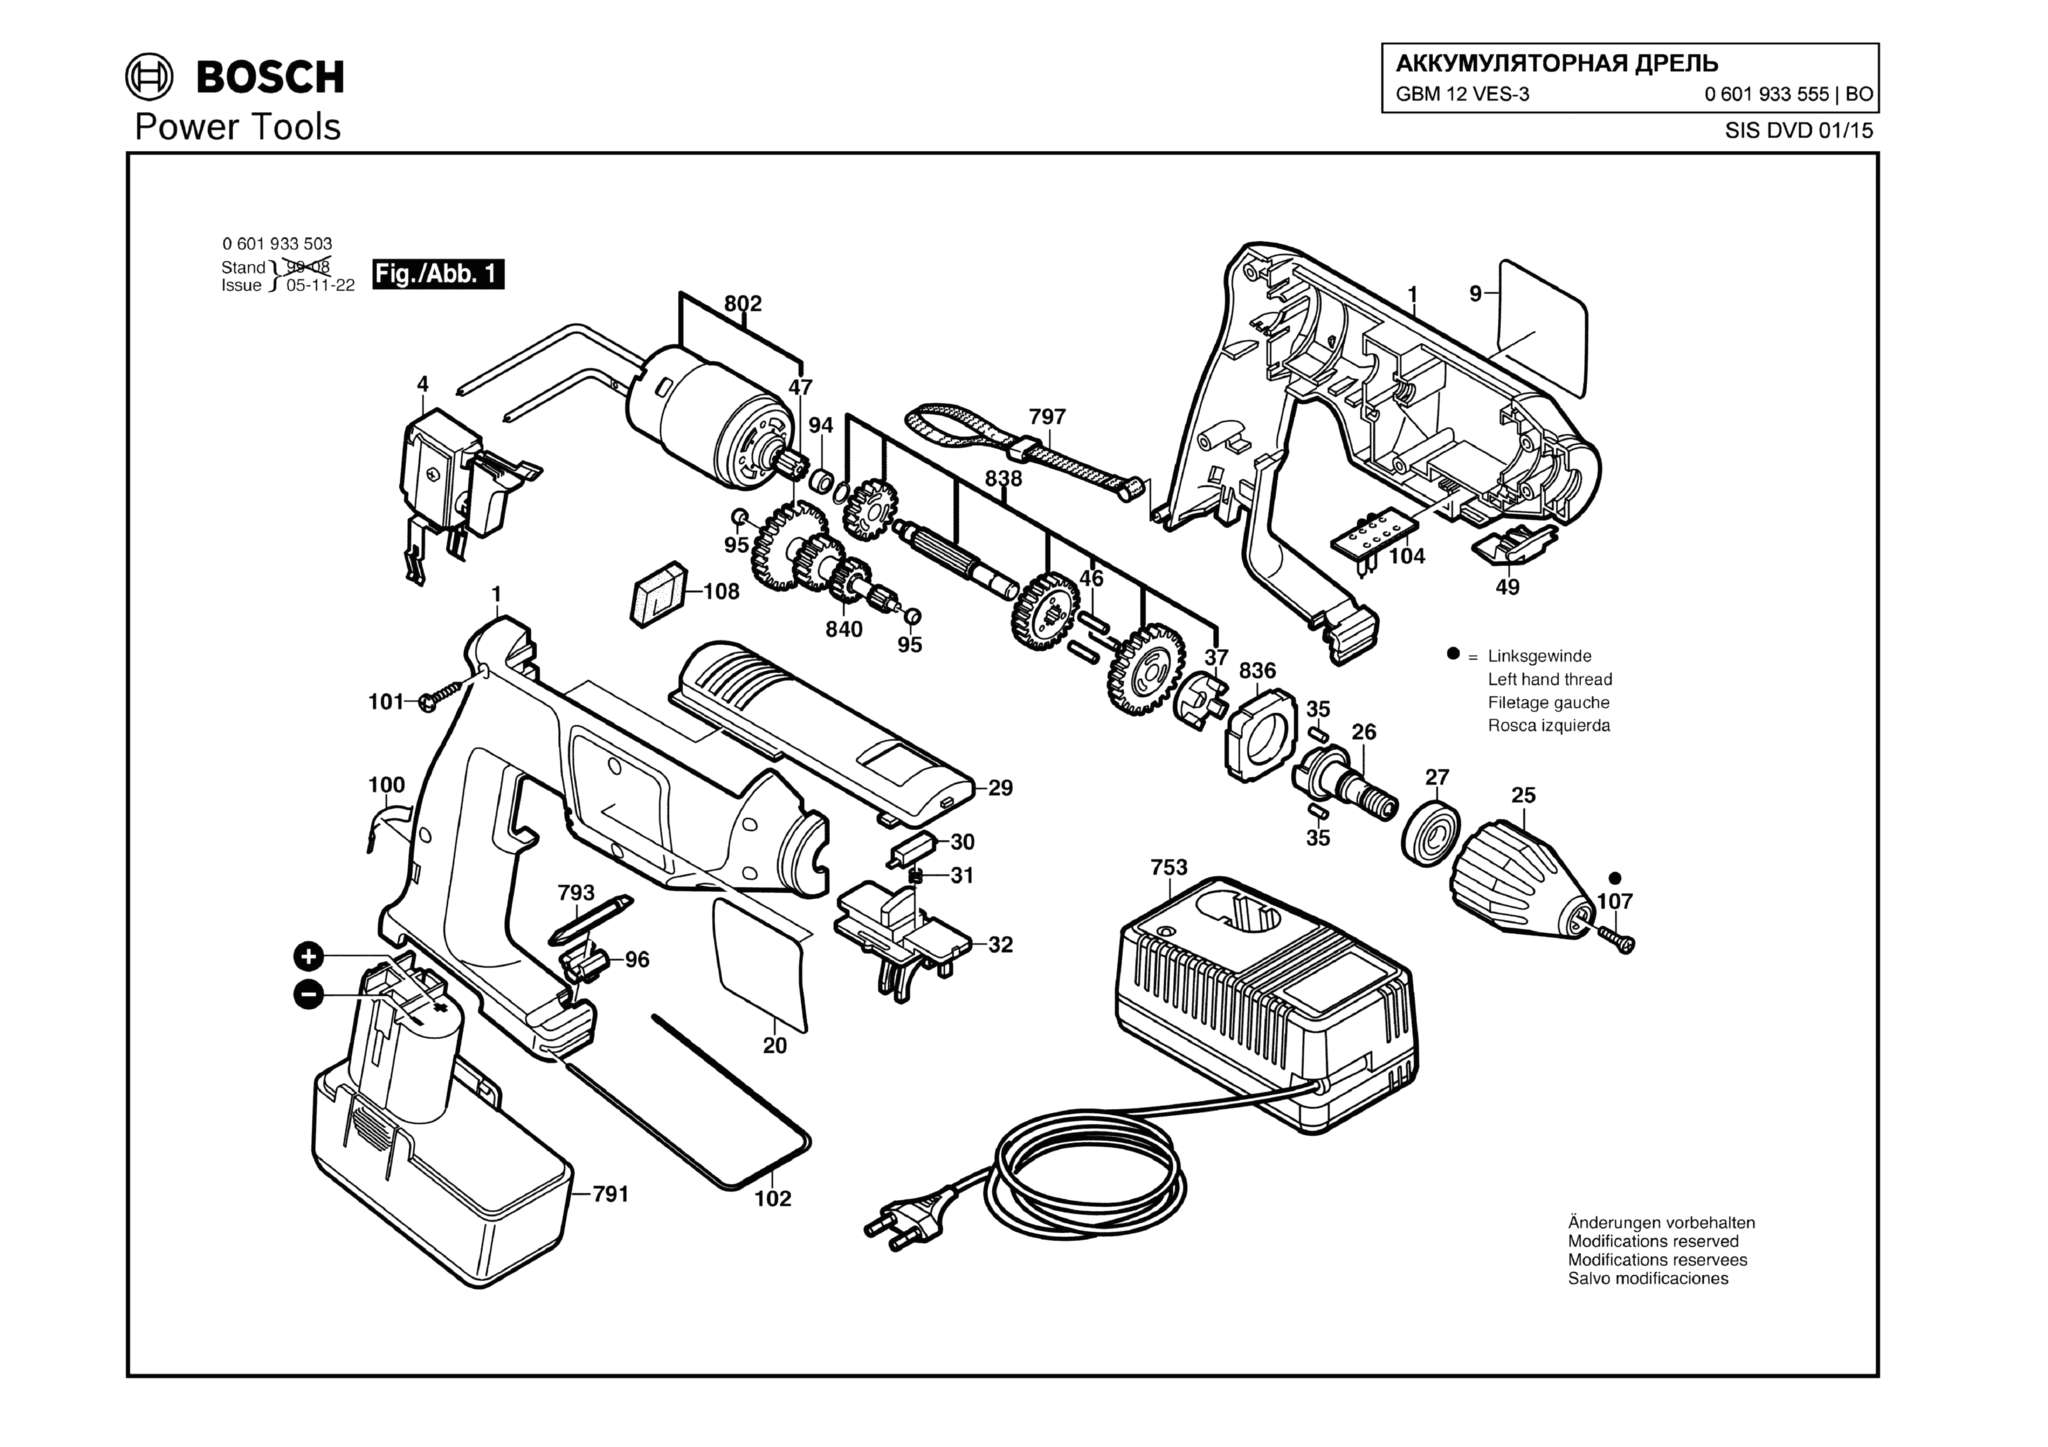 Запчасти, схема и деталировка Bosch GBM 12 VES-3 (ТИП 0601933555)